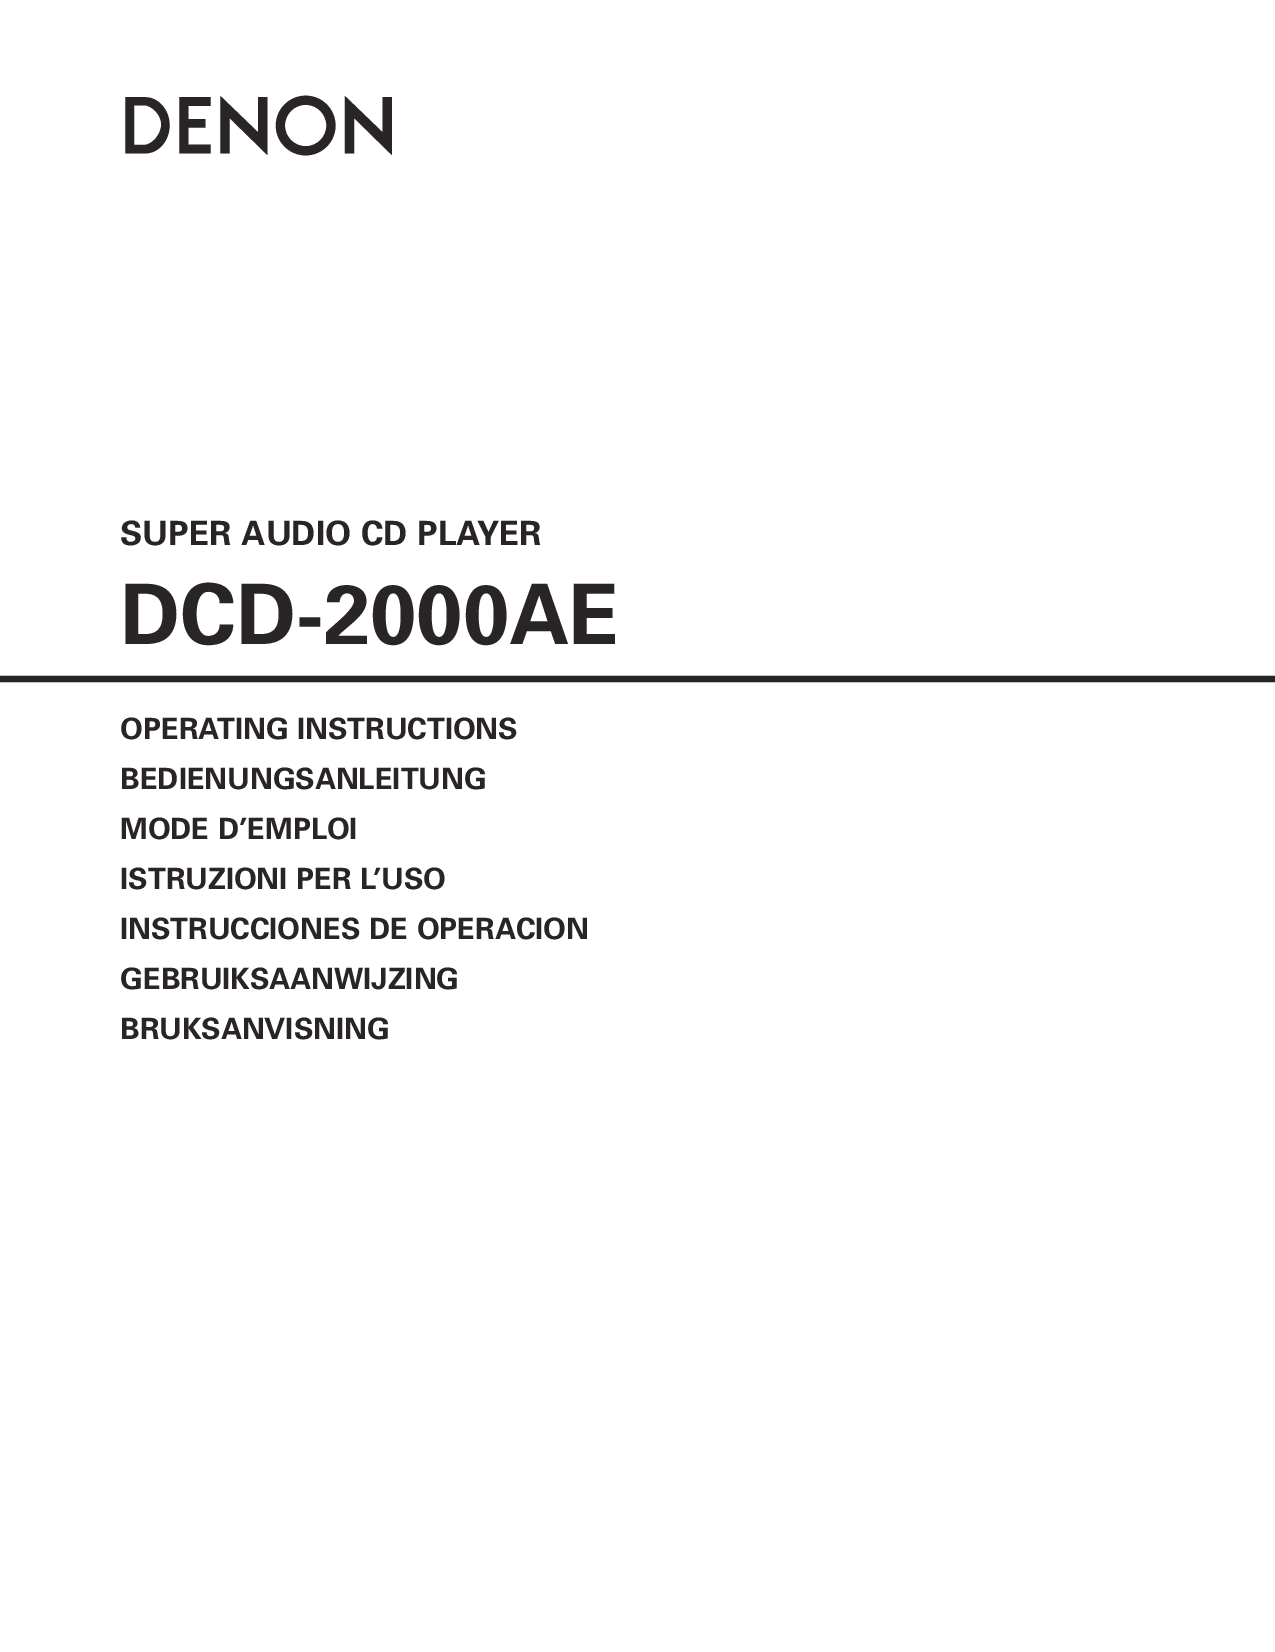 Denon DCD-2000AE User Manual